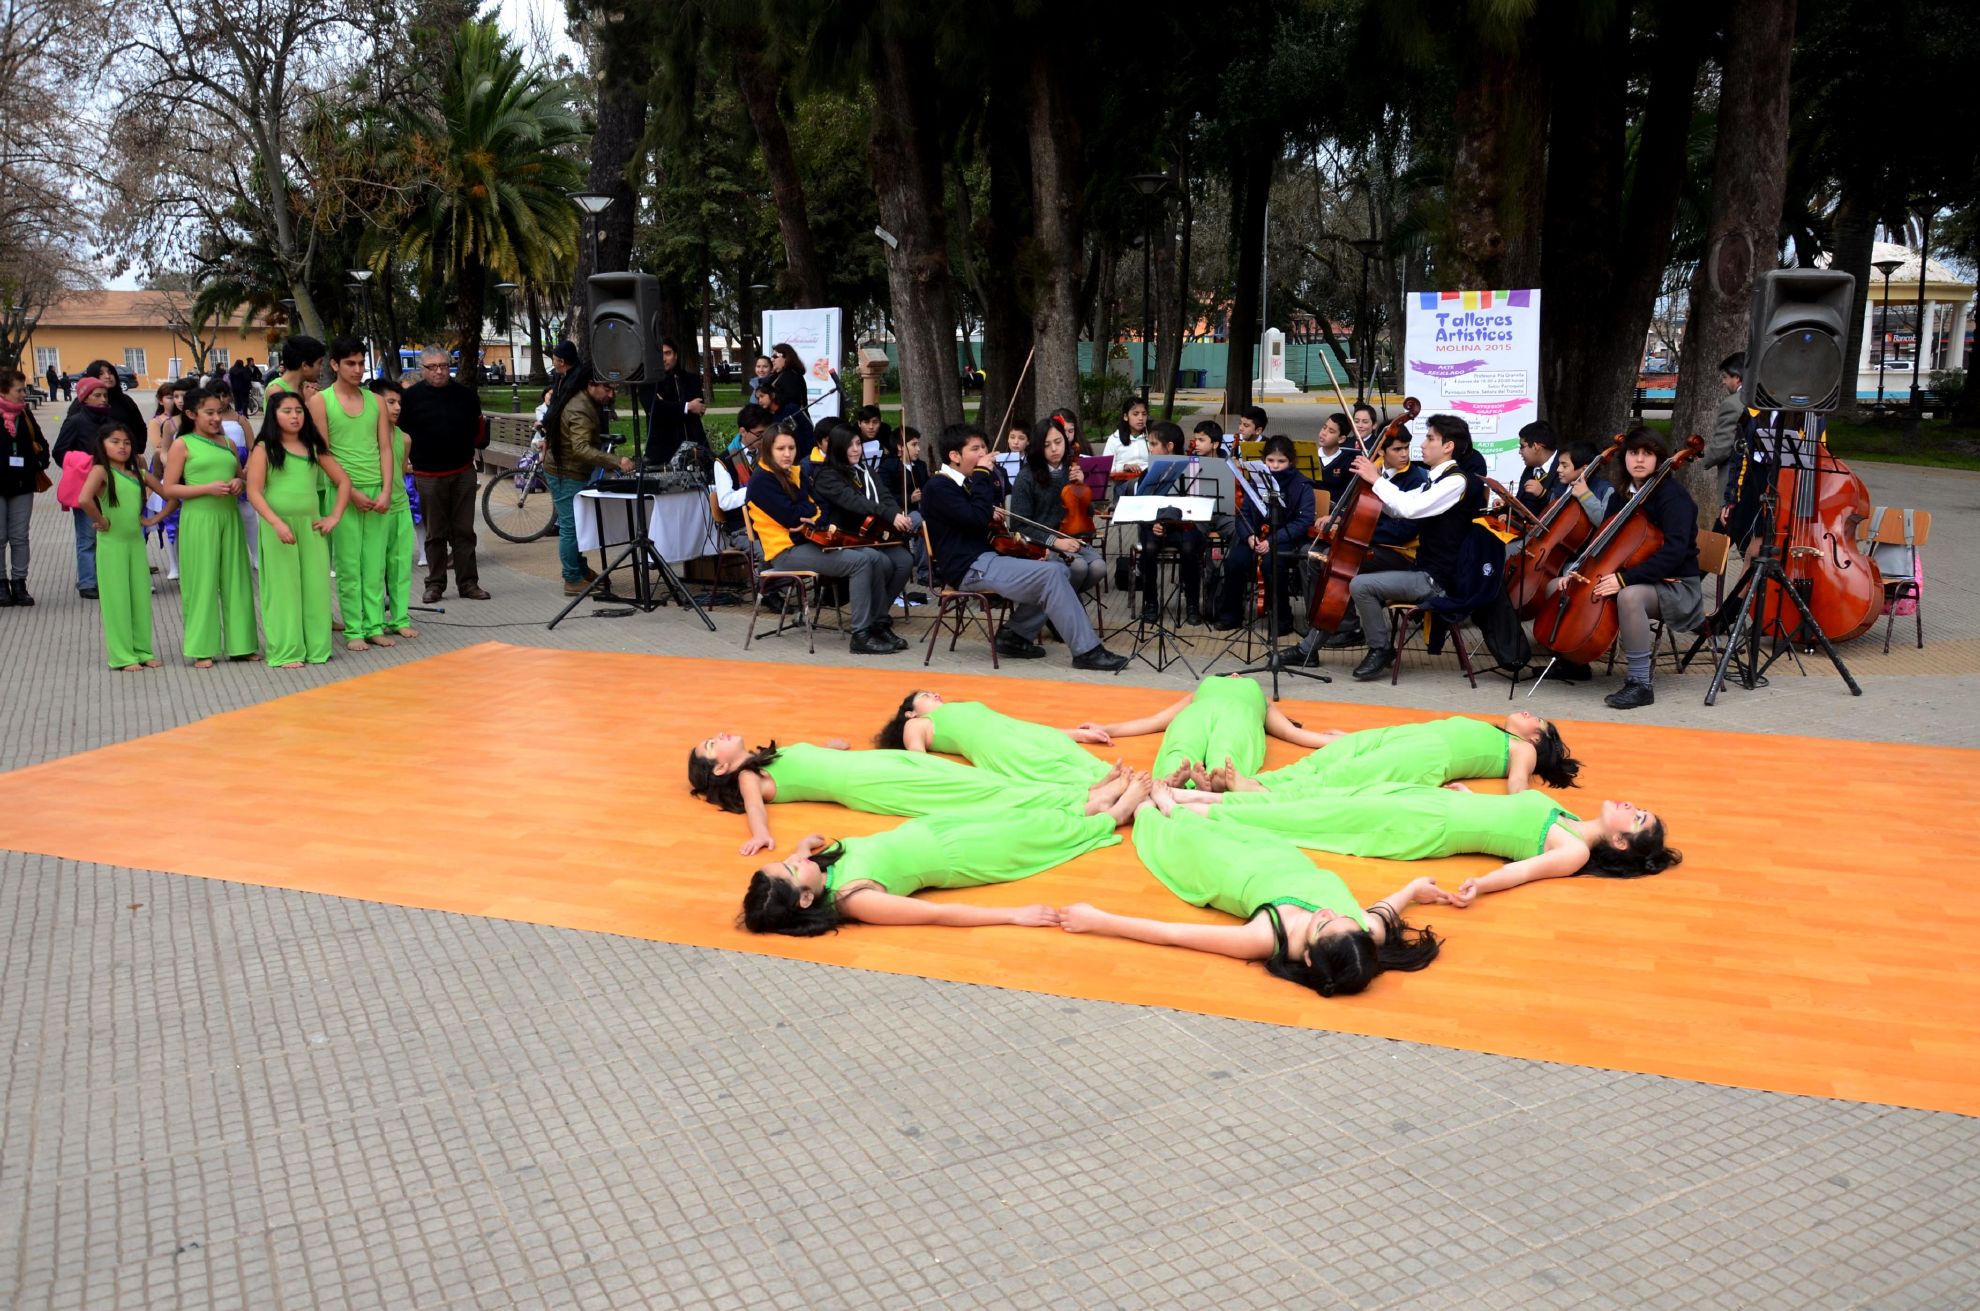 Academia de música y danza realiza intervención en plaza de Molina